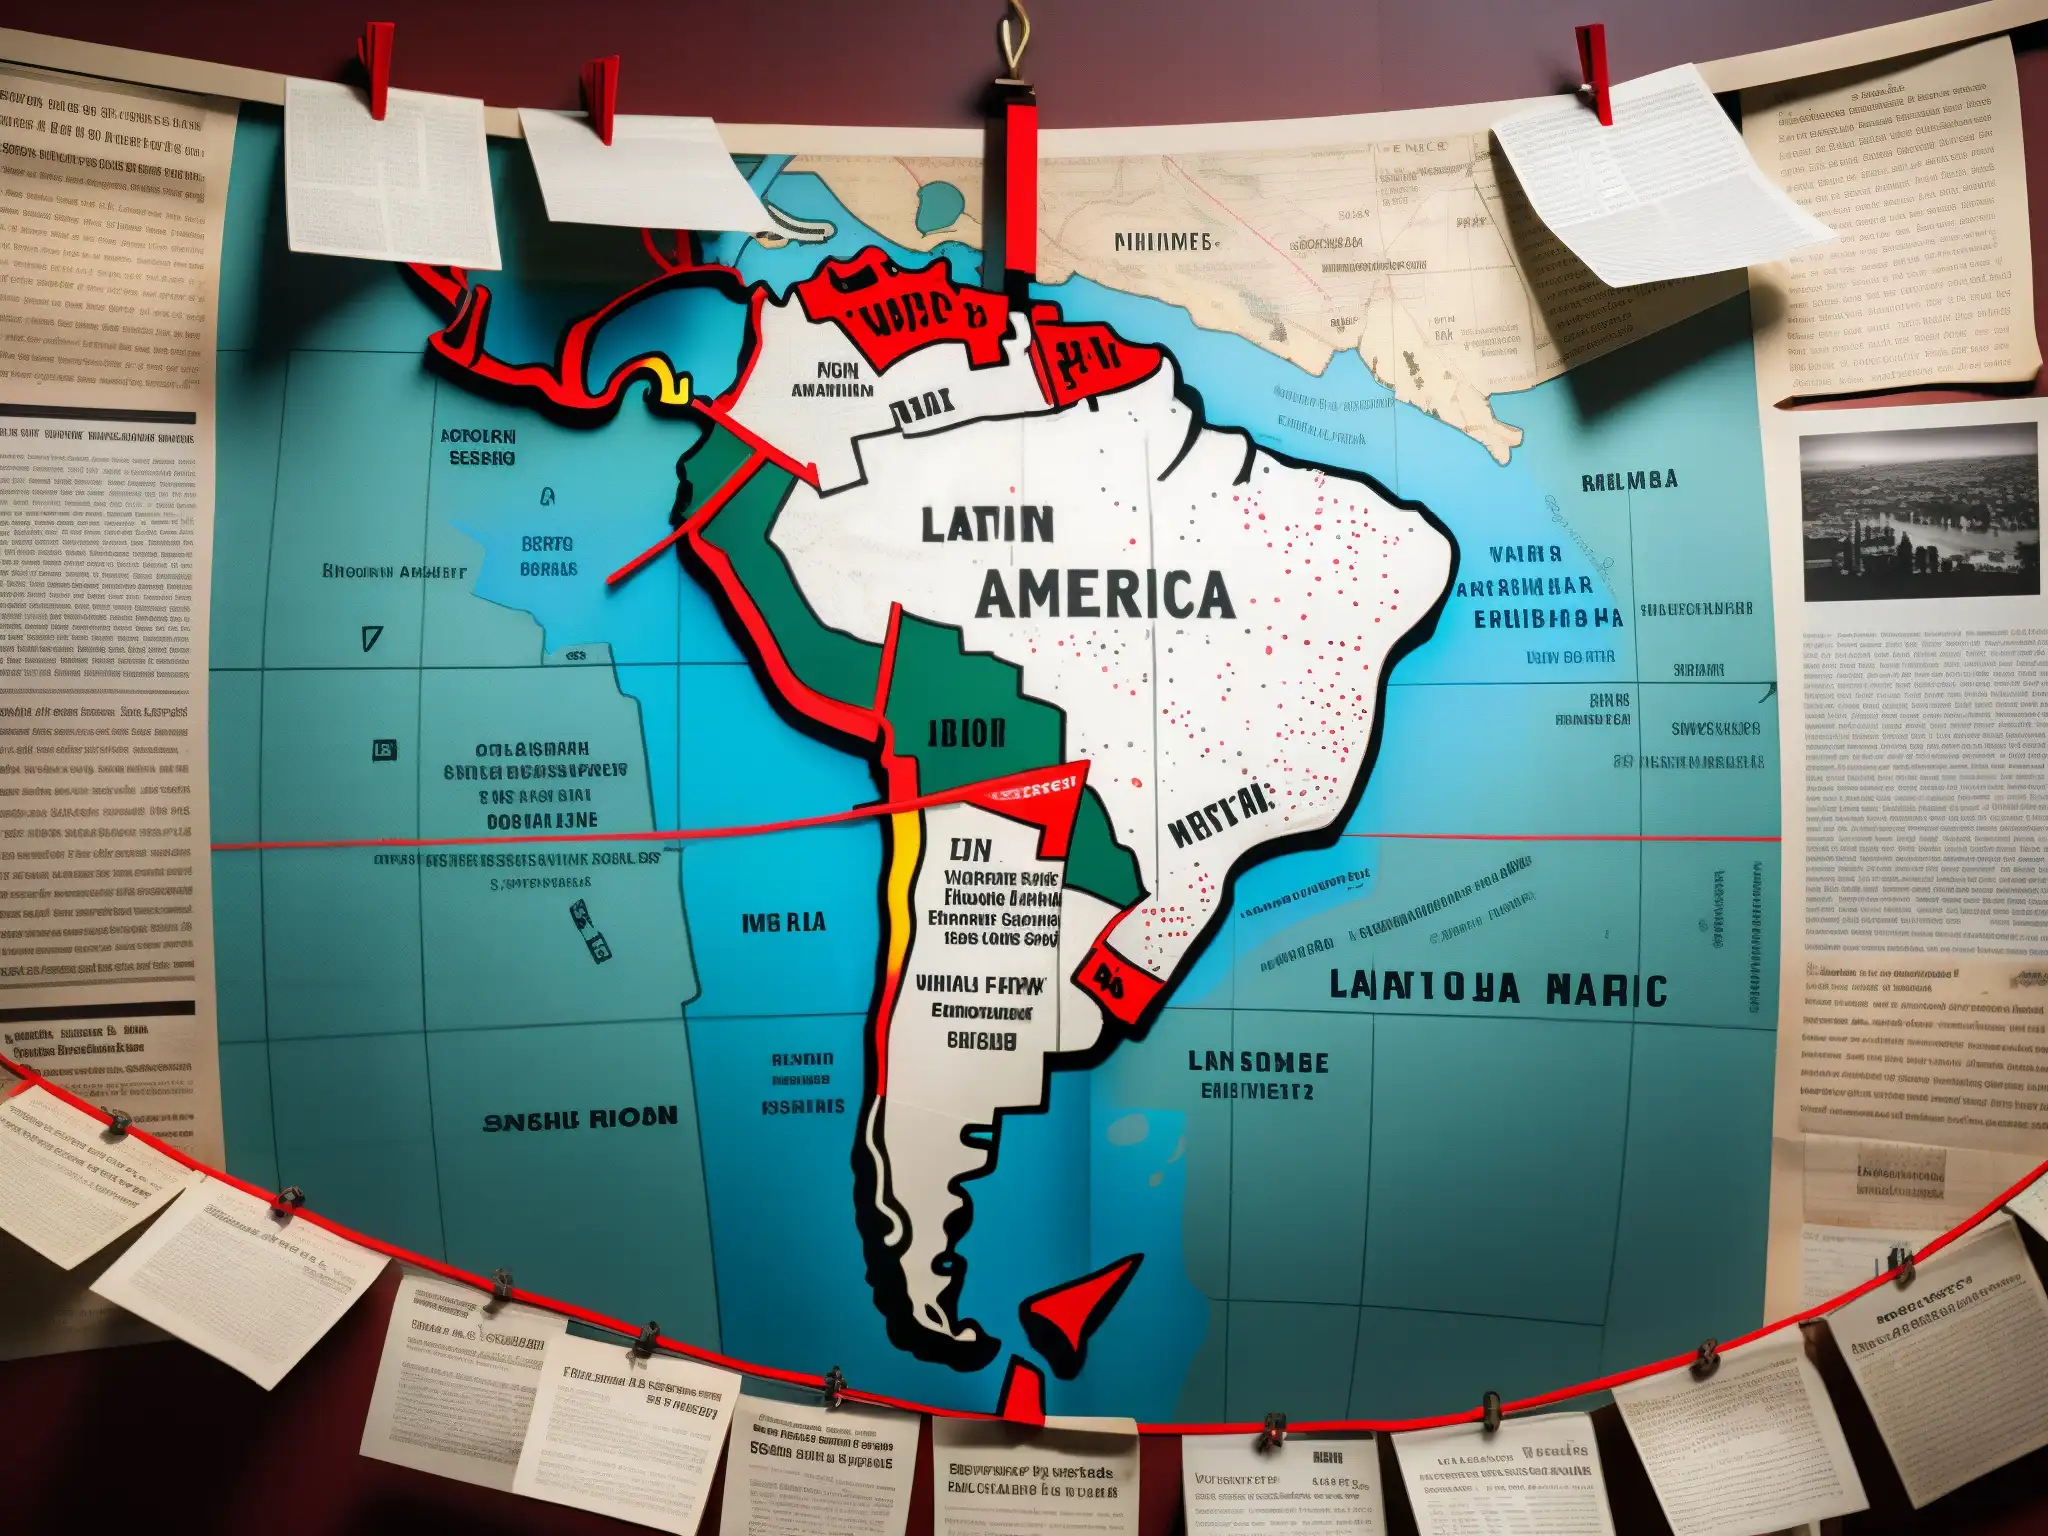 Una habitación semioscura con un gran mapa de Latinoamérica en la pared, rodeado de recortes de periódico, hilos rojos y notas escritas a mano